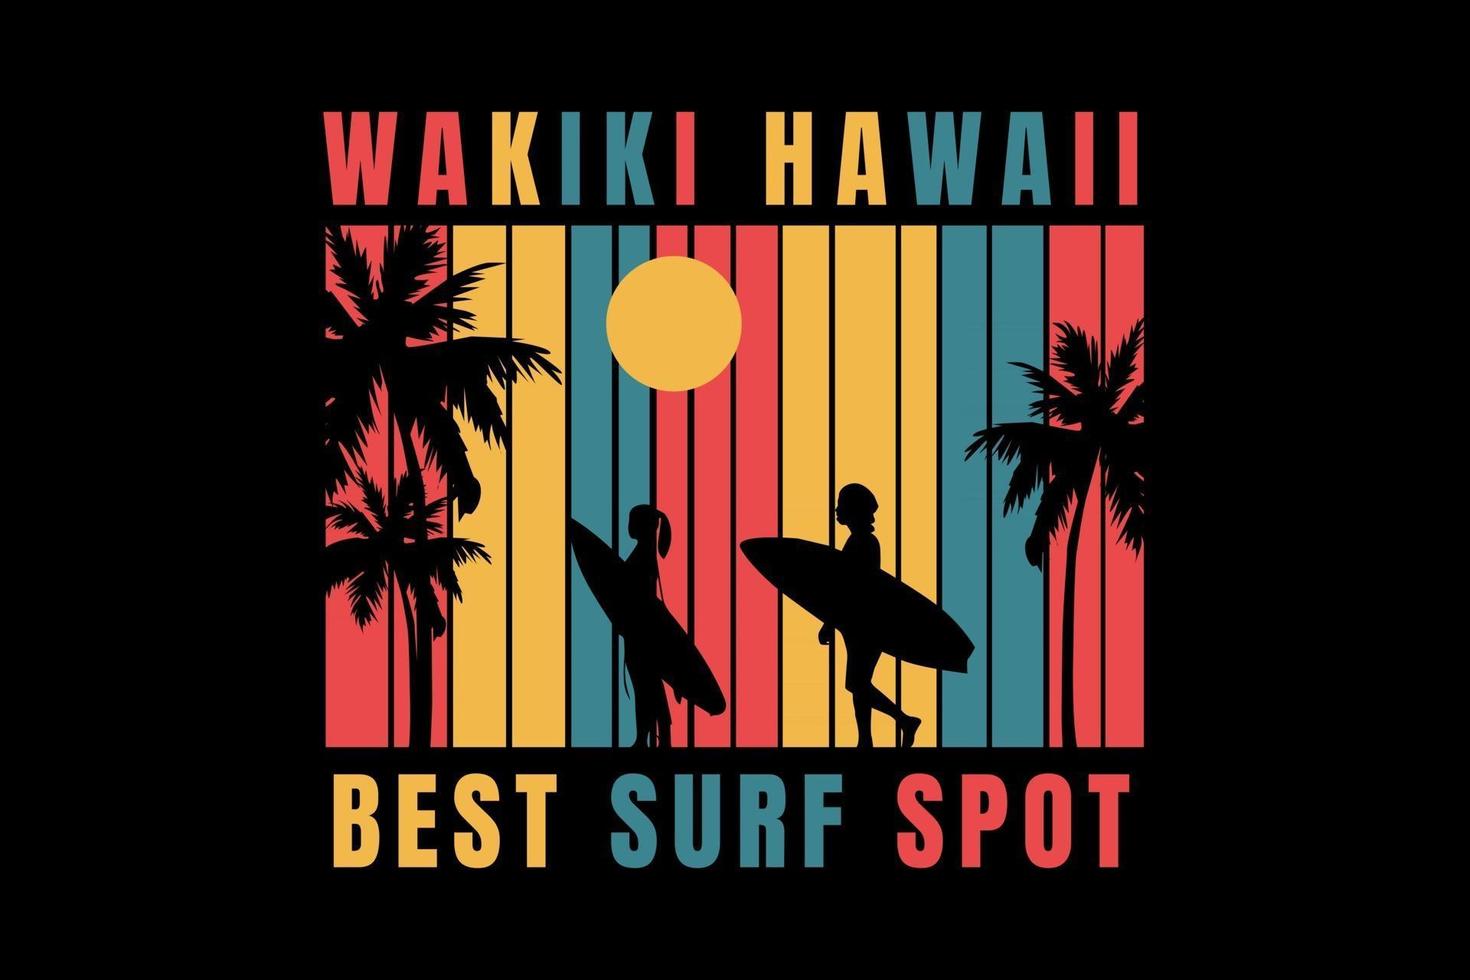 t-shirt surf sur la plage hawaii meilleur spot de surf vecteur